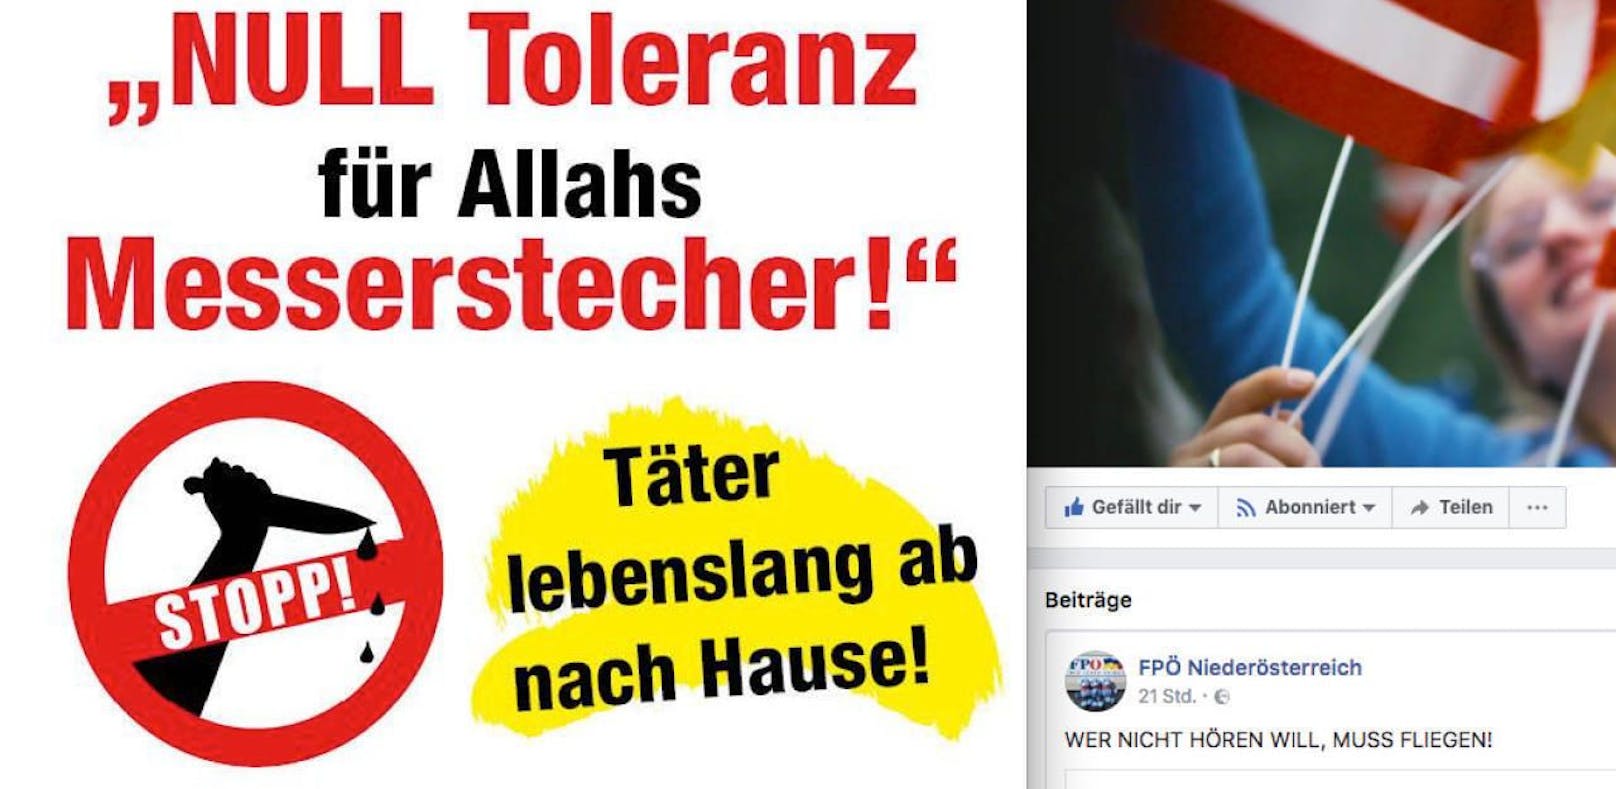 FPNÖ-Posting: &quot;Null Toleranz für Allahs Messerstecher!&quot;